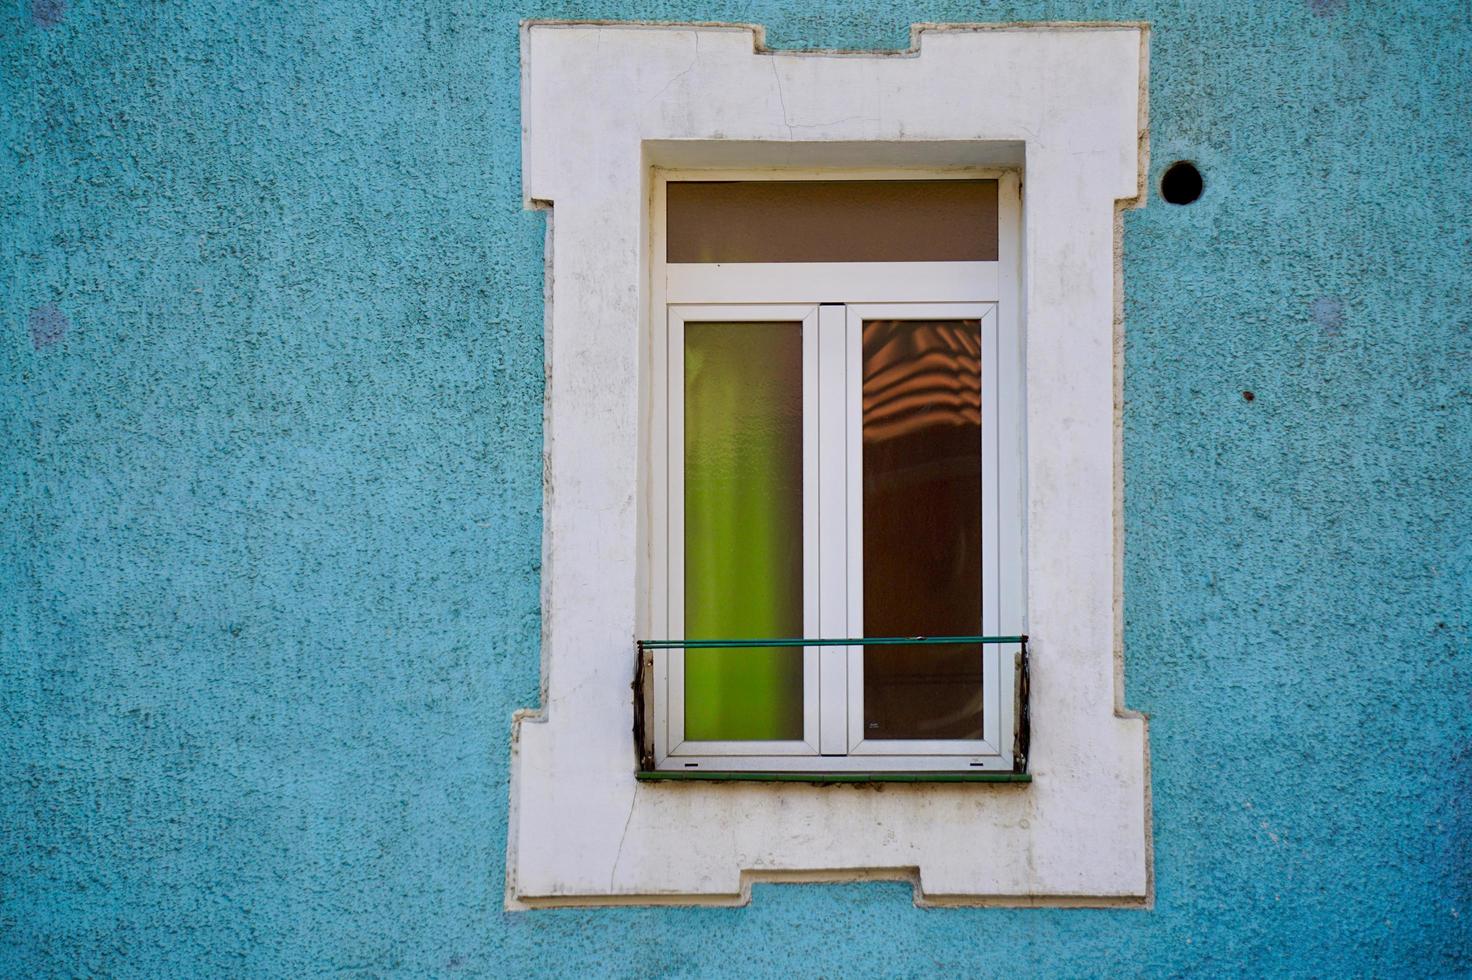 Fenêtre sur la façade bleue de la maison, l'architecture dans la ville de Bilbao, Espagne photo